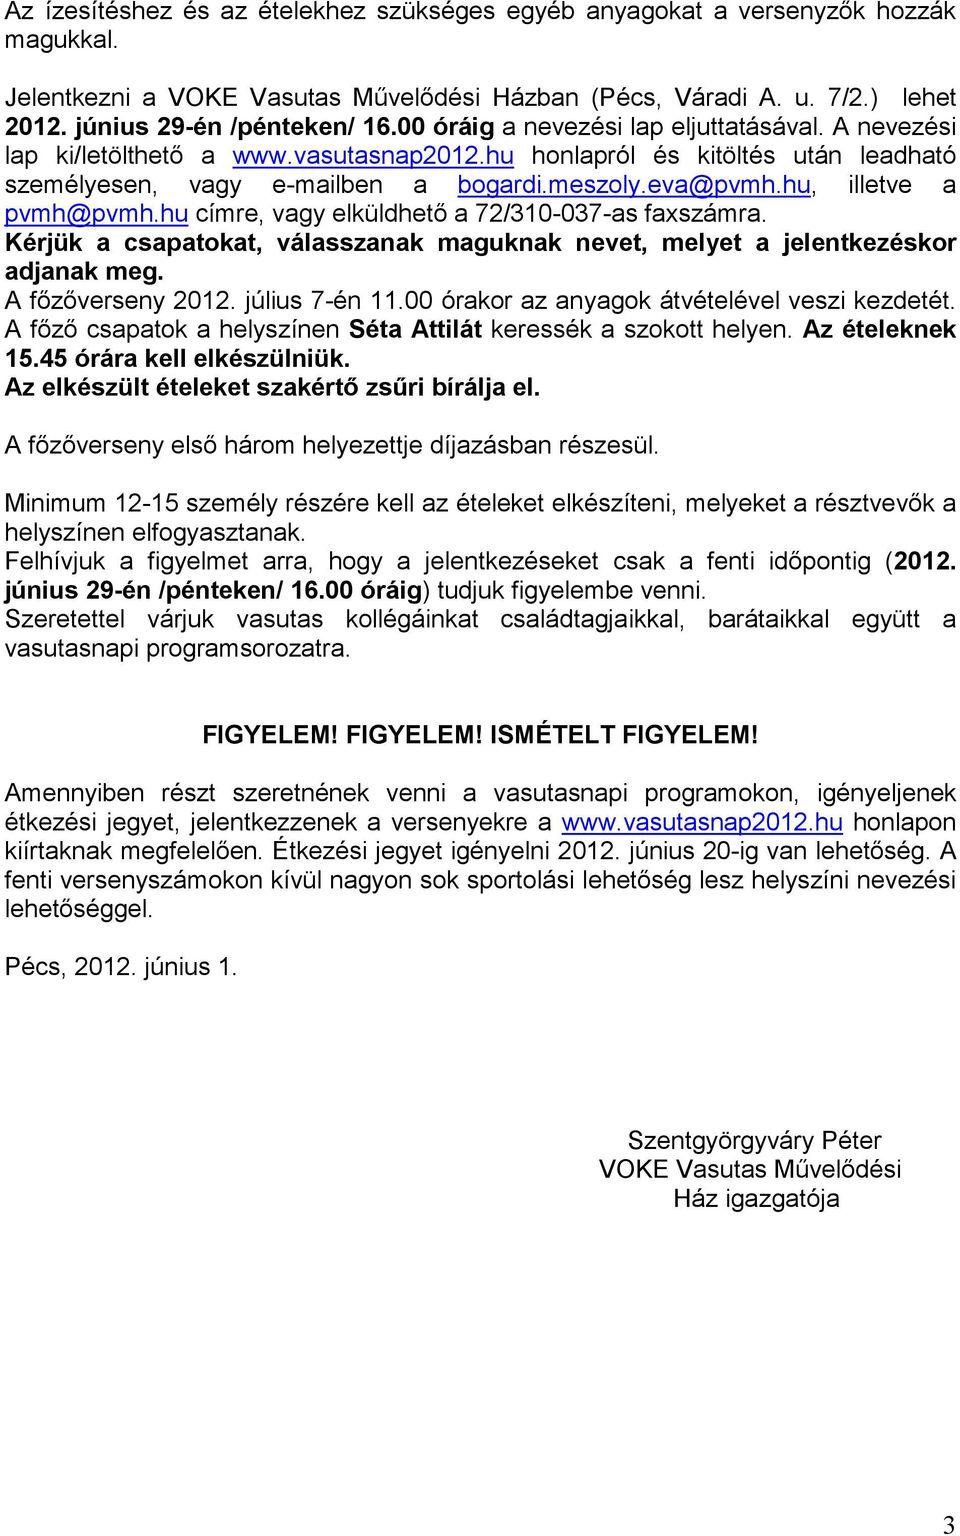 hu, illetve a pvmh@pvmh.hu címre, vagy elküldhetı a 72/310-037-as faxszámra. Kérjük a csapatokat, válasszanak maguknak nevet, melyet a jelentkezéskor adjanak meg. A fızıverseny 2012. július 7-én 11.